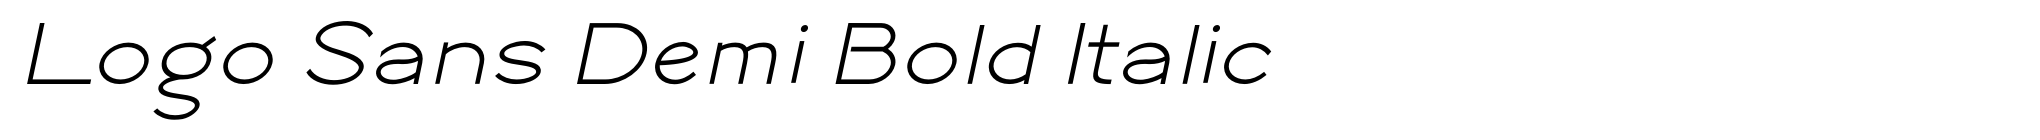 Logo Sans Demi Bold Italic image